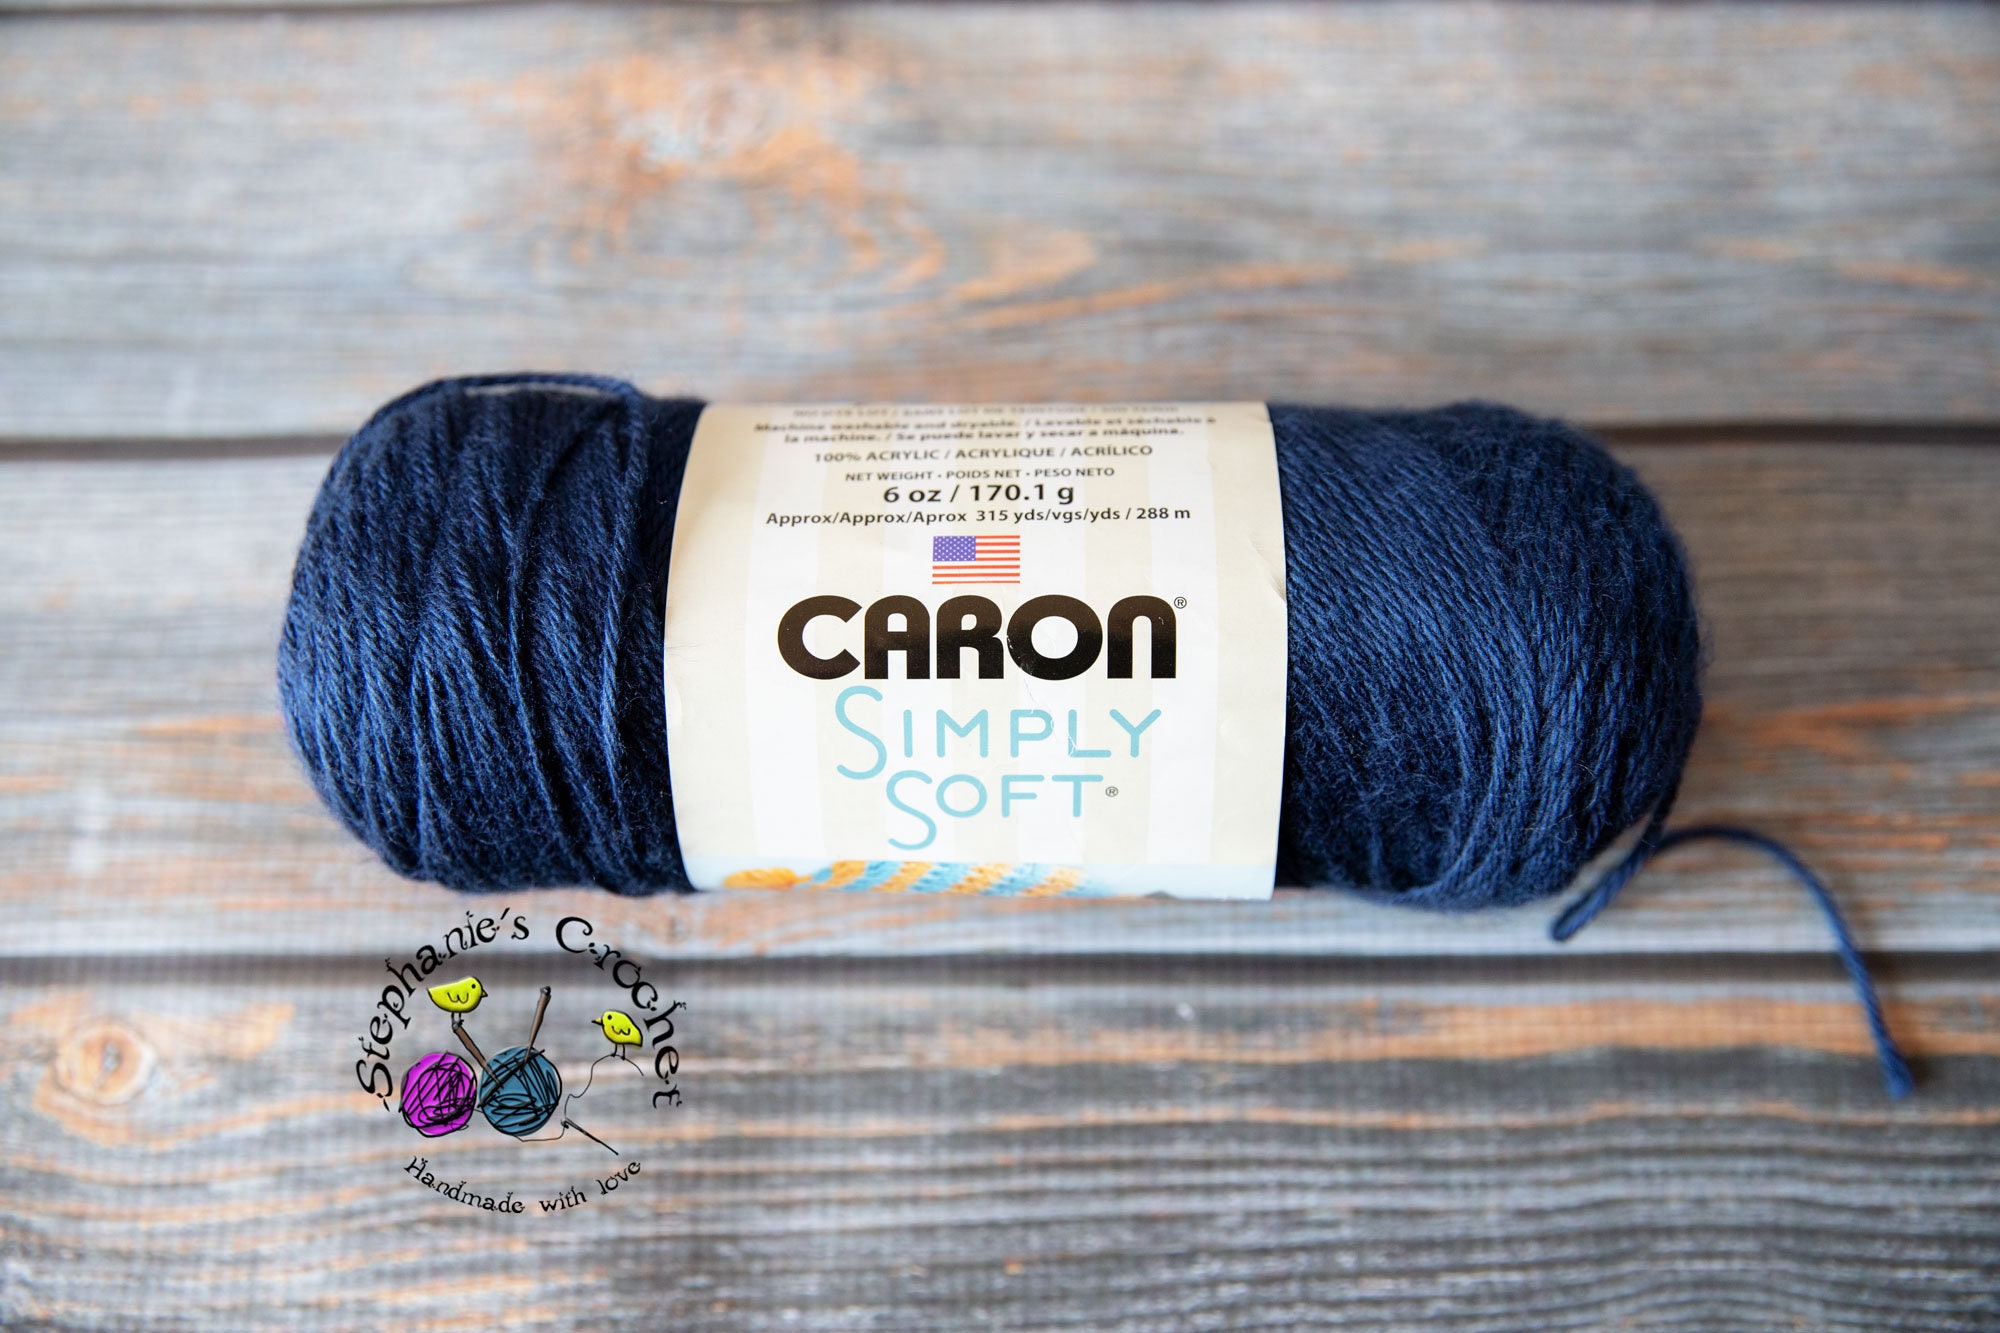 Blueberry Kiwi, Caron Cakes Yarn, Green Blue, Knit Crochet, Medium 4  Acrylic Wool Yarn, Scarf Accessory Yarn 